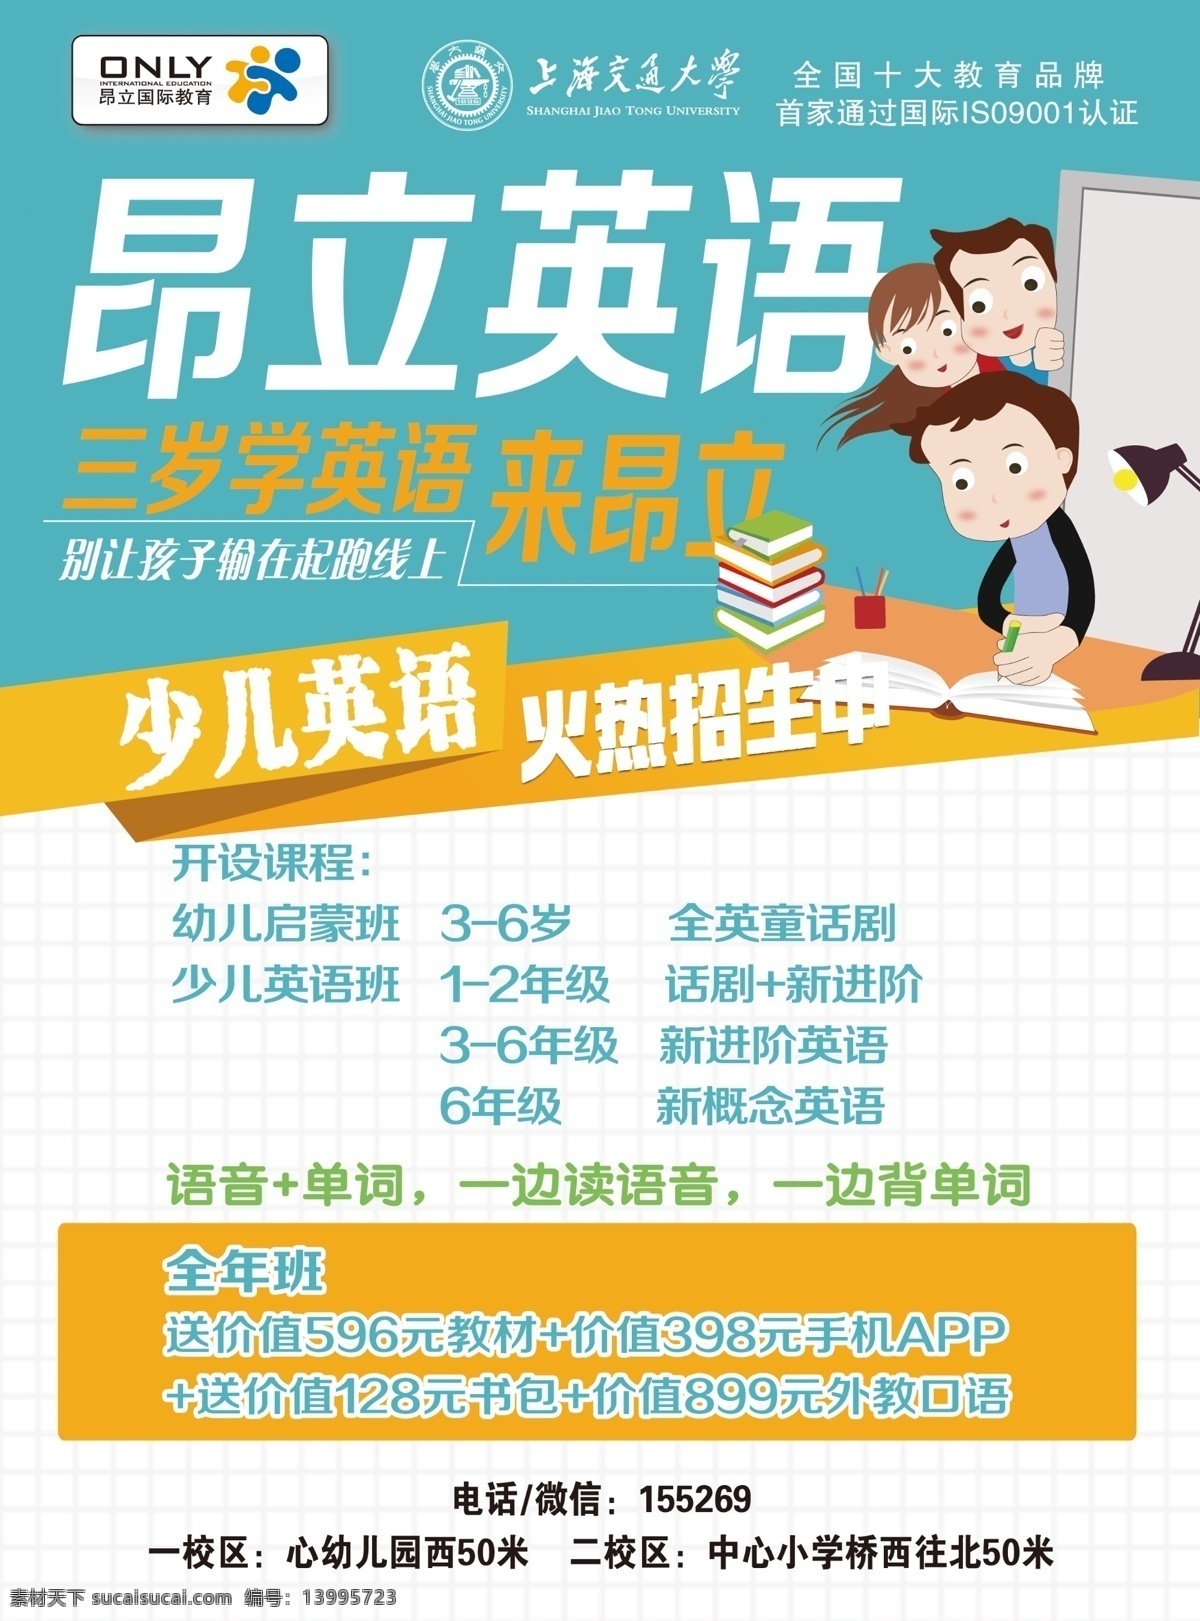 昂立英语 少儿英语 上海 大学 学习 英语 活动 招生 海报 宣传 彩页 高清 dm宣传单